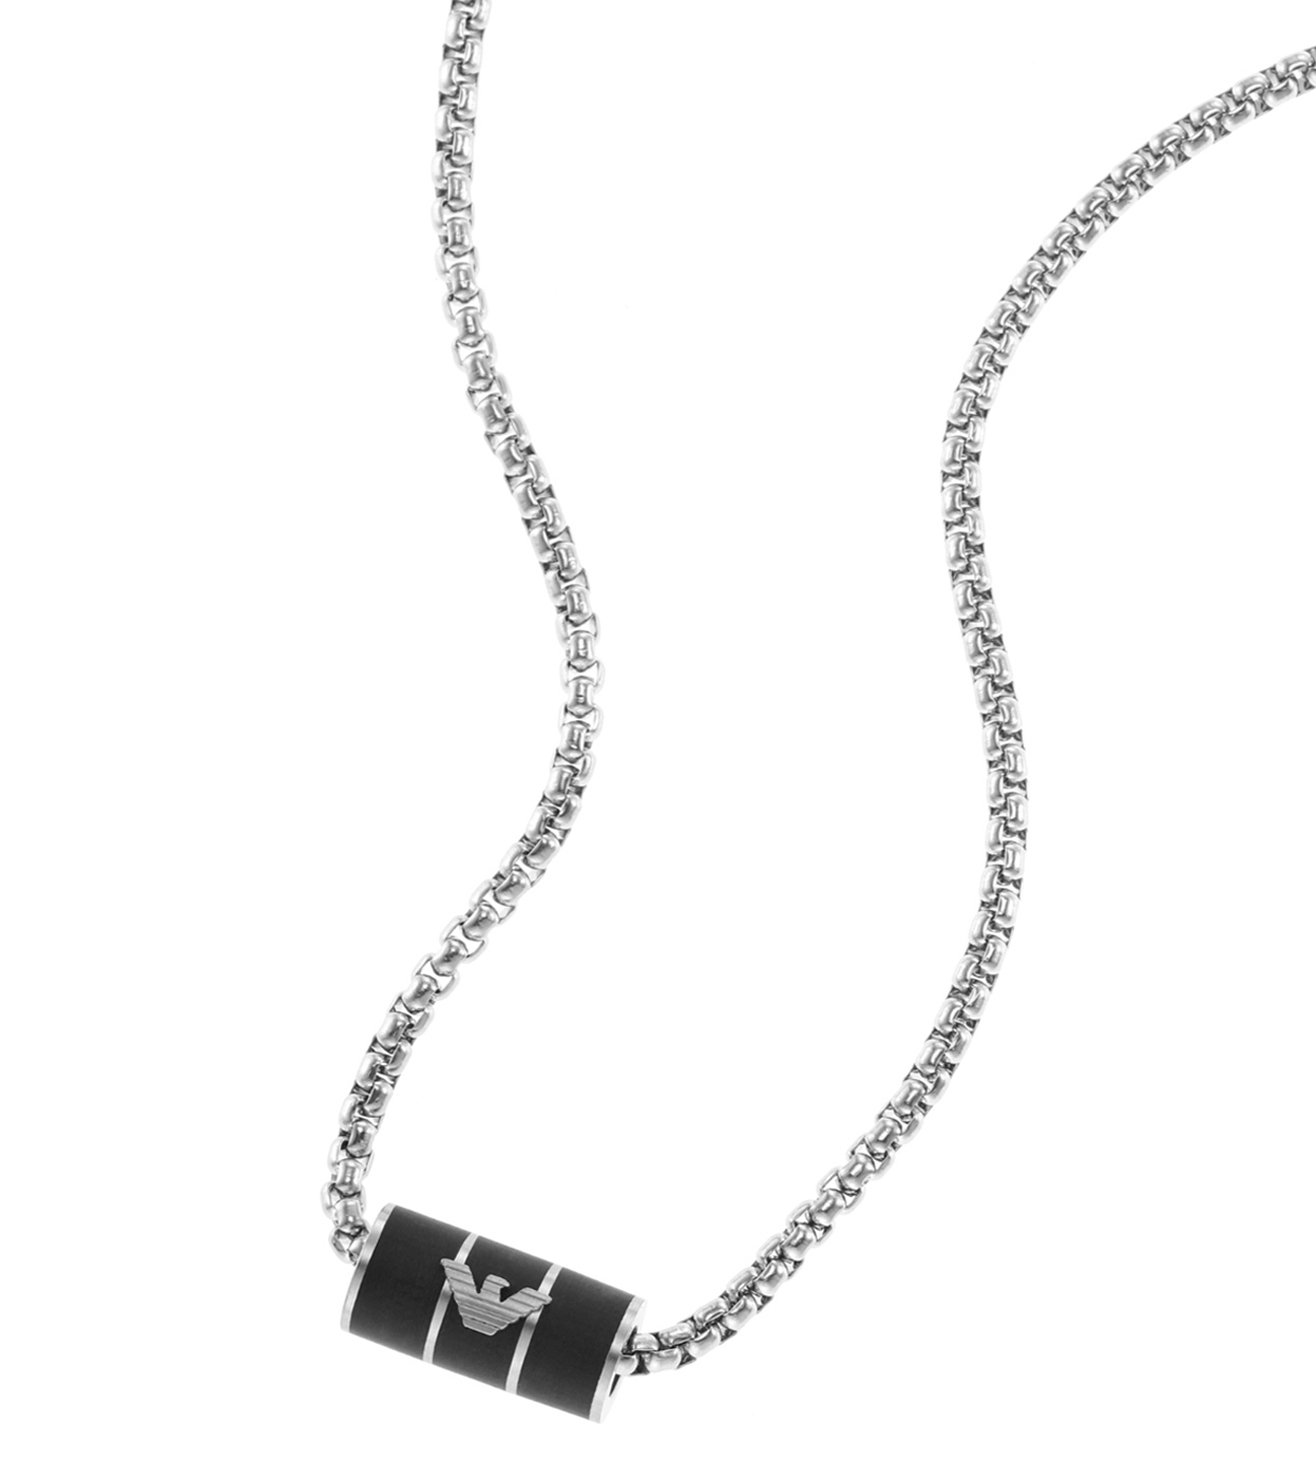 Buy Emporio Armani Emporio Armani Silver Essential Necklace at Redfynd